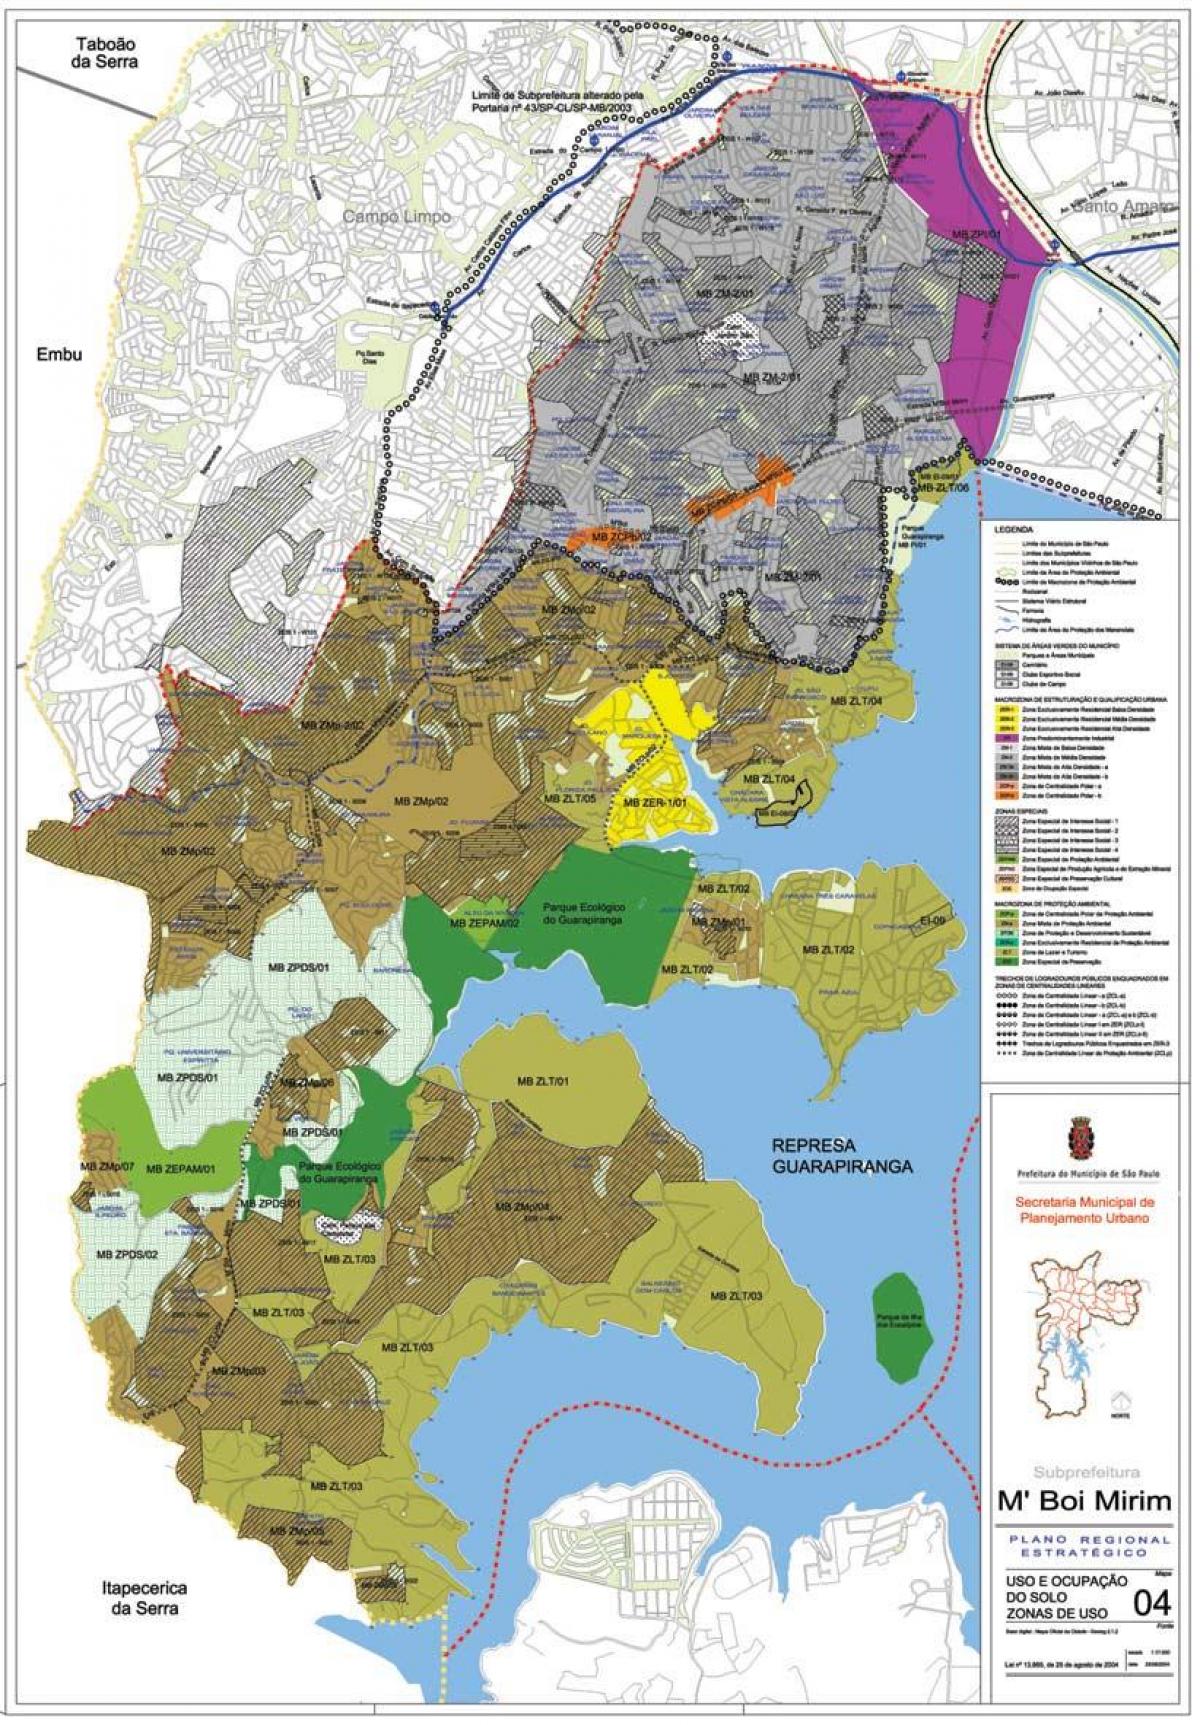 Mapa de M'Boi Mirim, São Paulo - Ocupación do solo